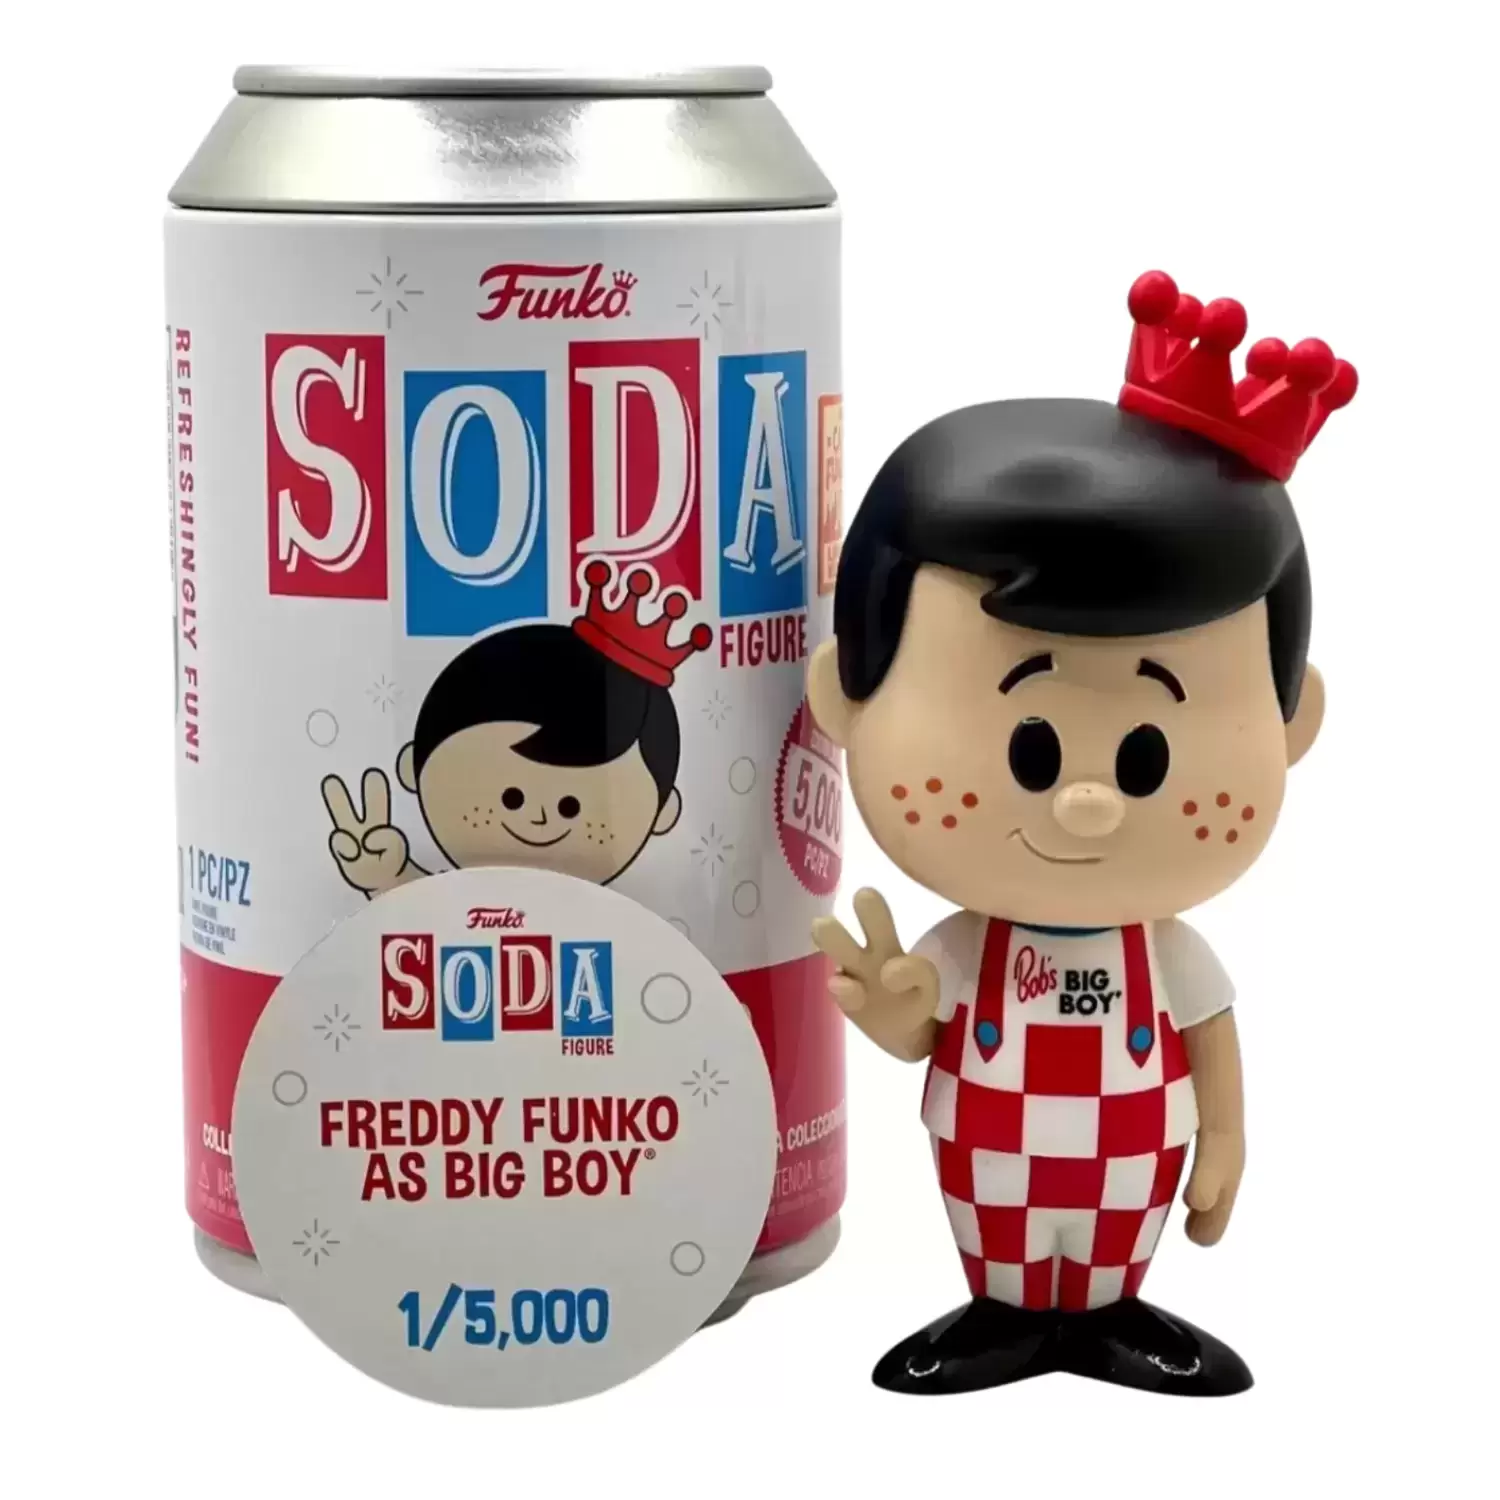 Vinyl Soda! - Freddy Funko as Big Boy